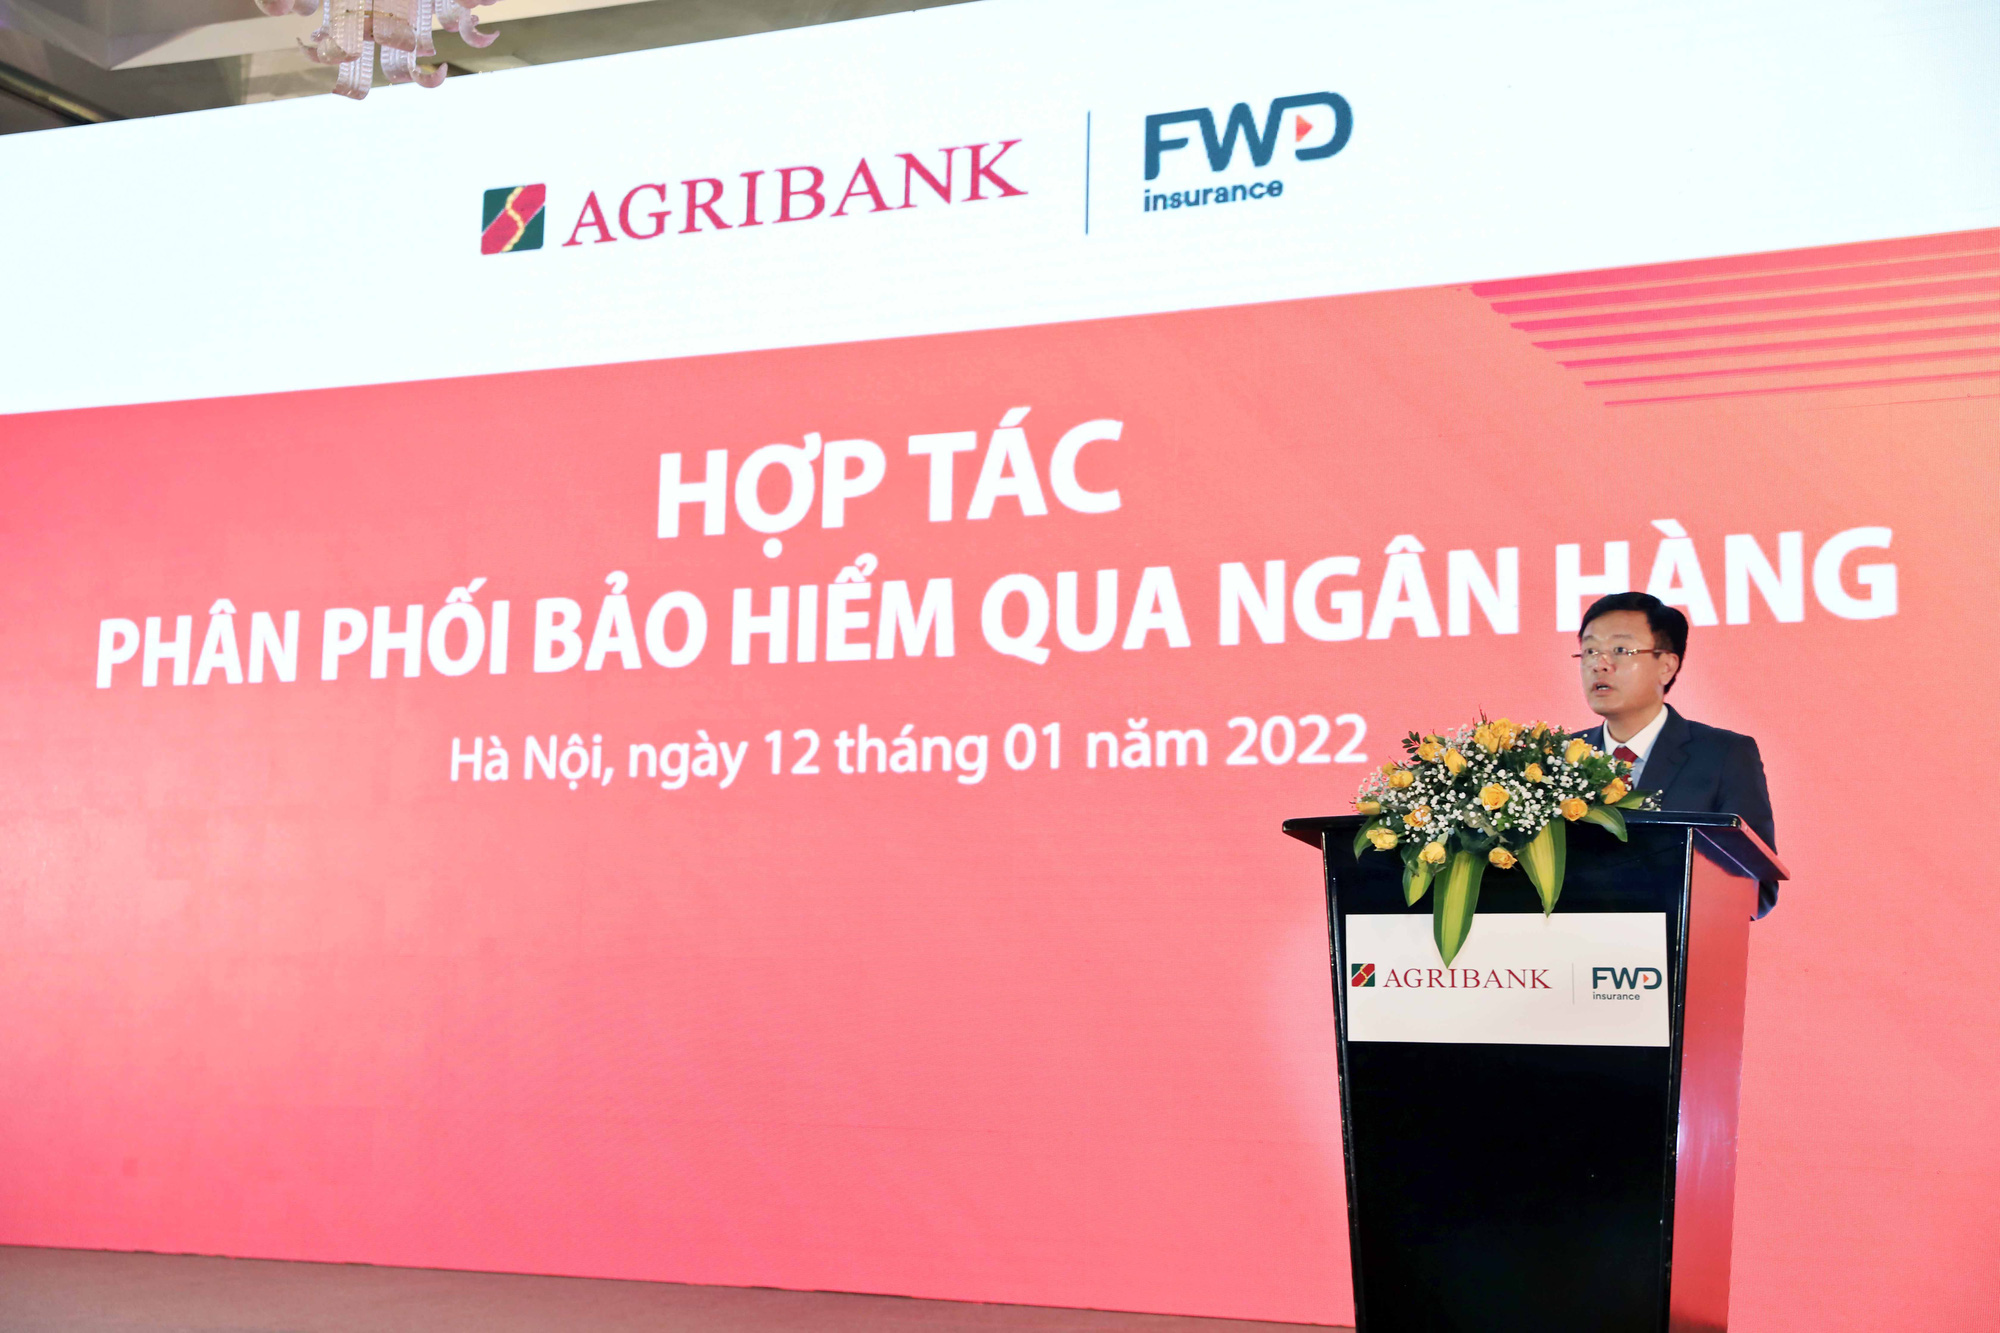 FWD Việt Nam triển khai hợp tác phân phối bảo hiểm qua ngân hàng - Ảnh 2.